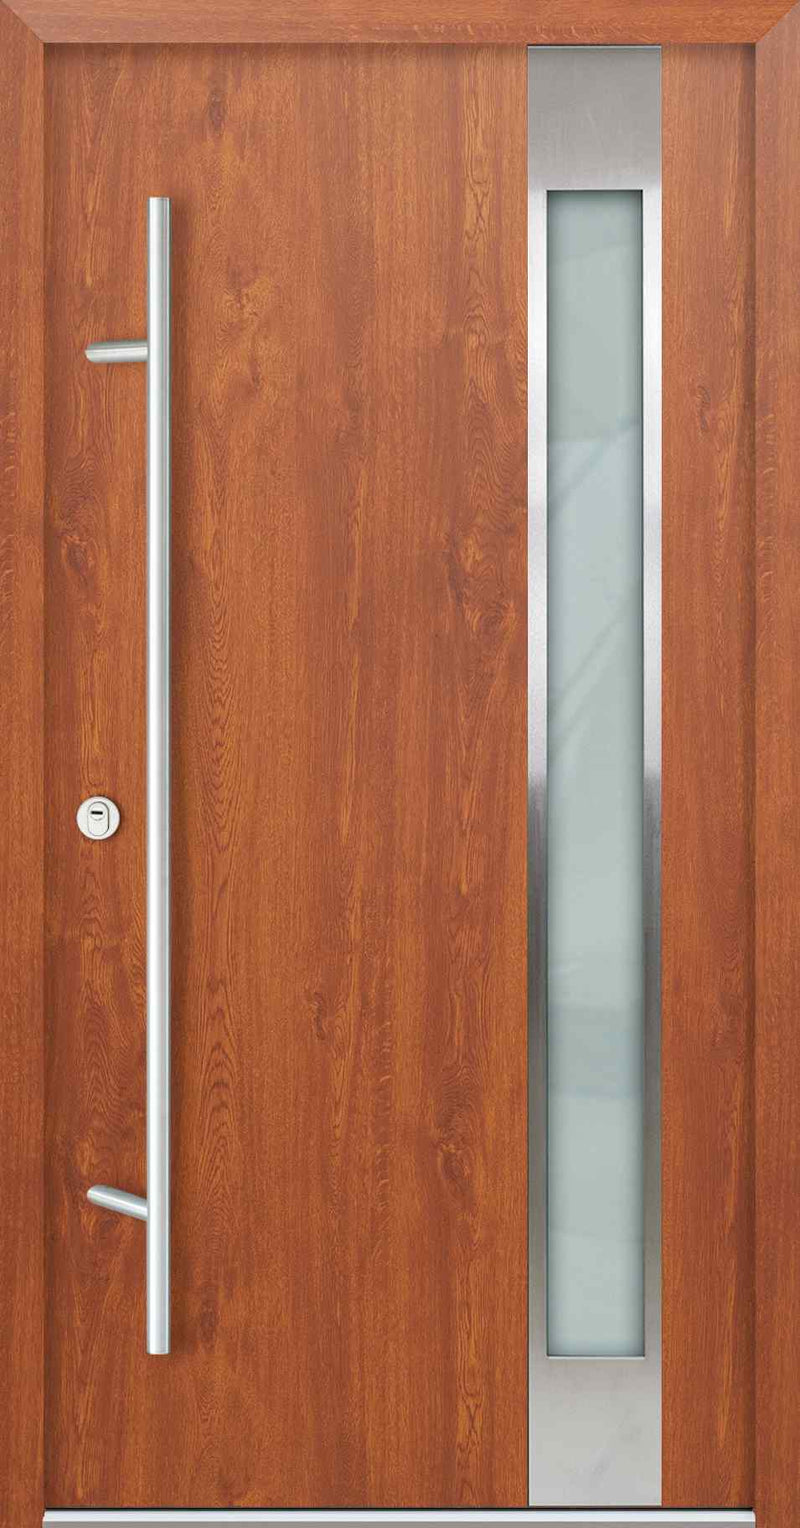 Turenwerke AC68 Design 04 Steel Door - Golden Oak